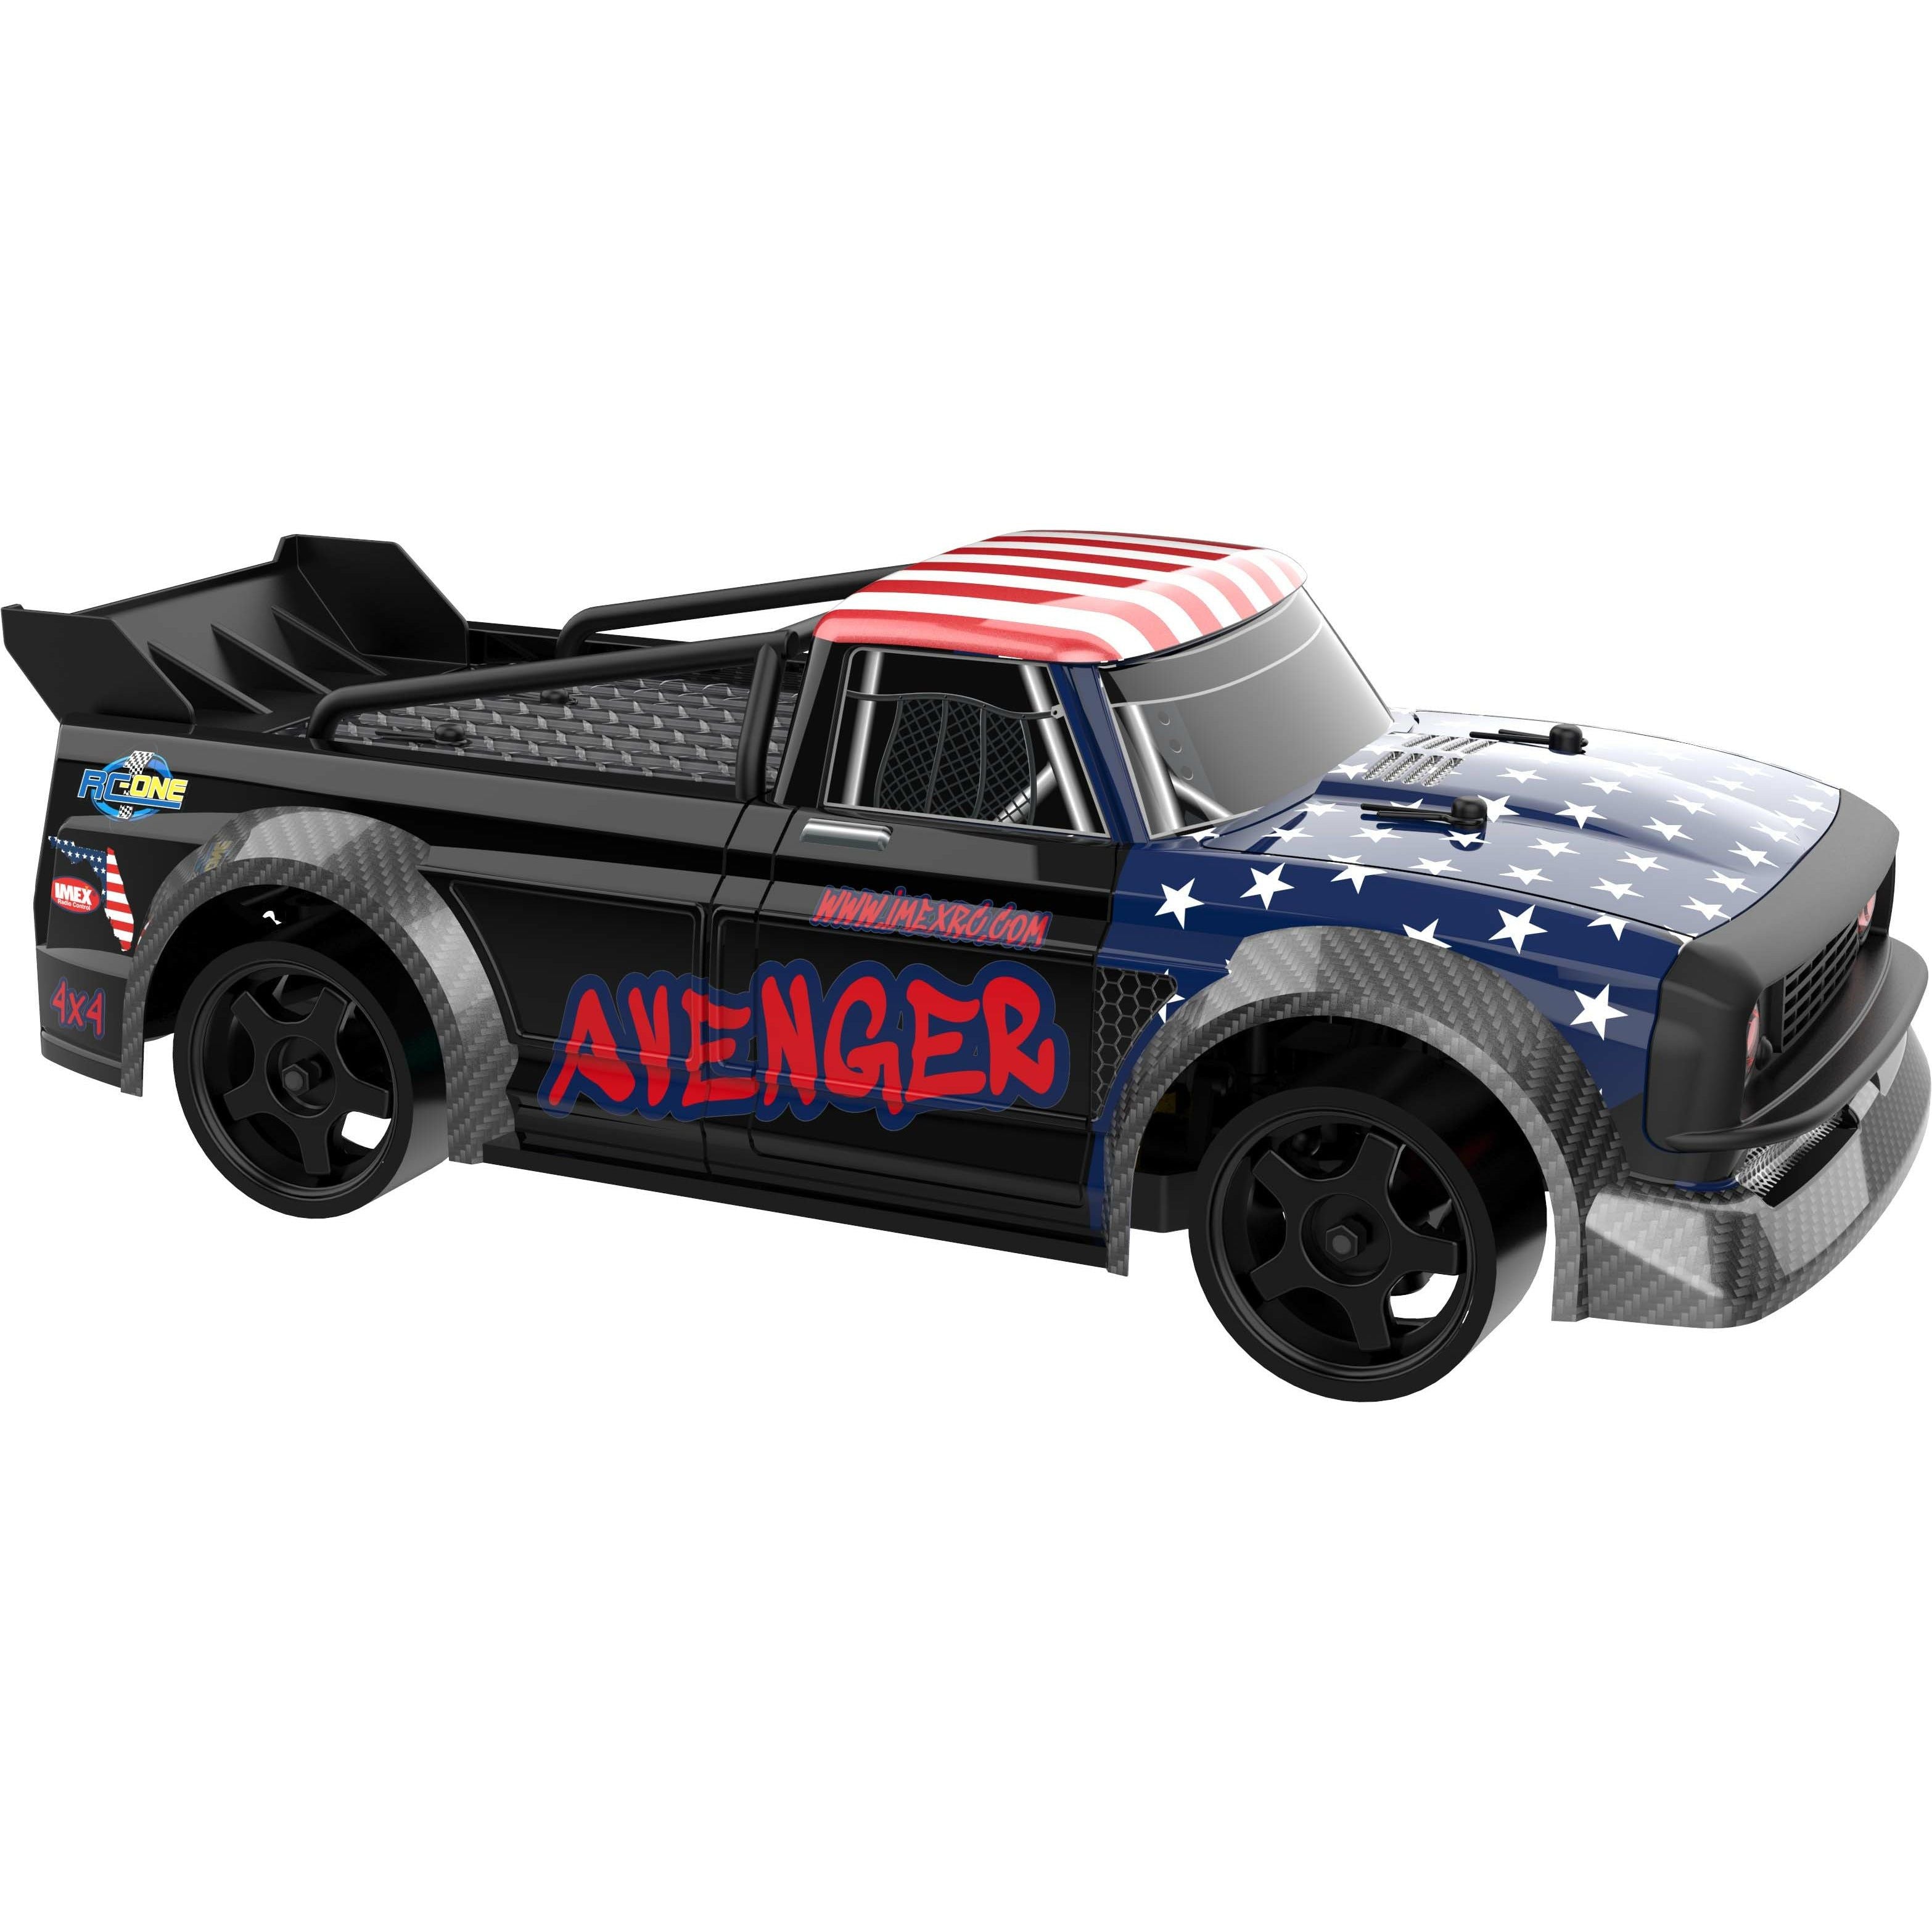 Avenger Truck Body - Painted